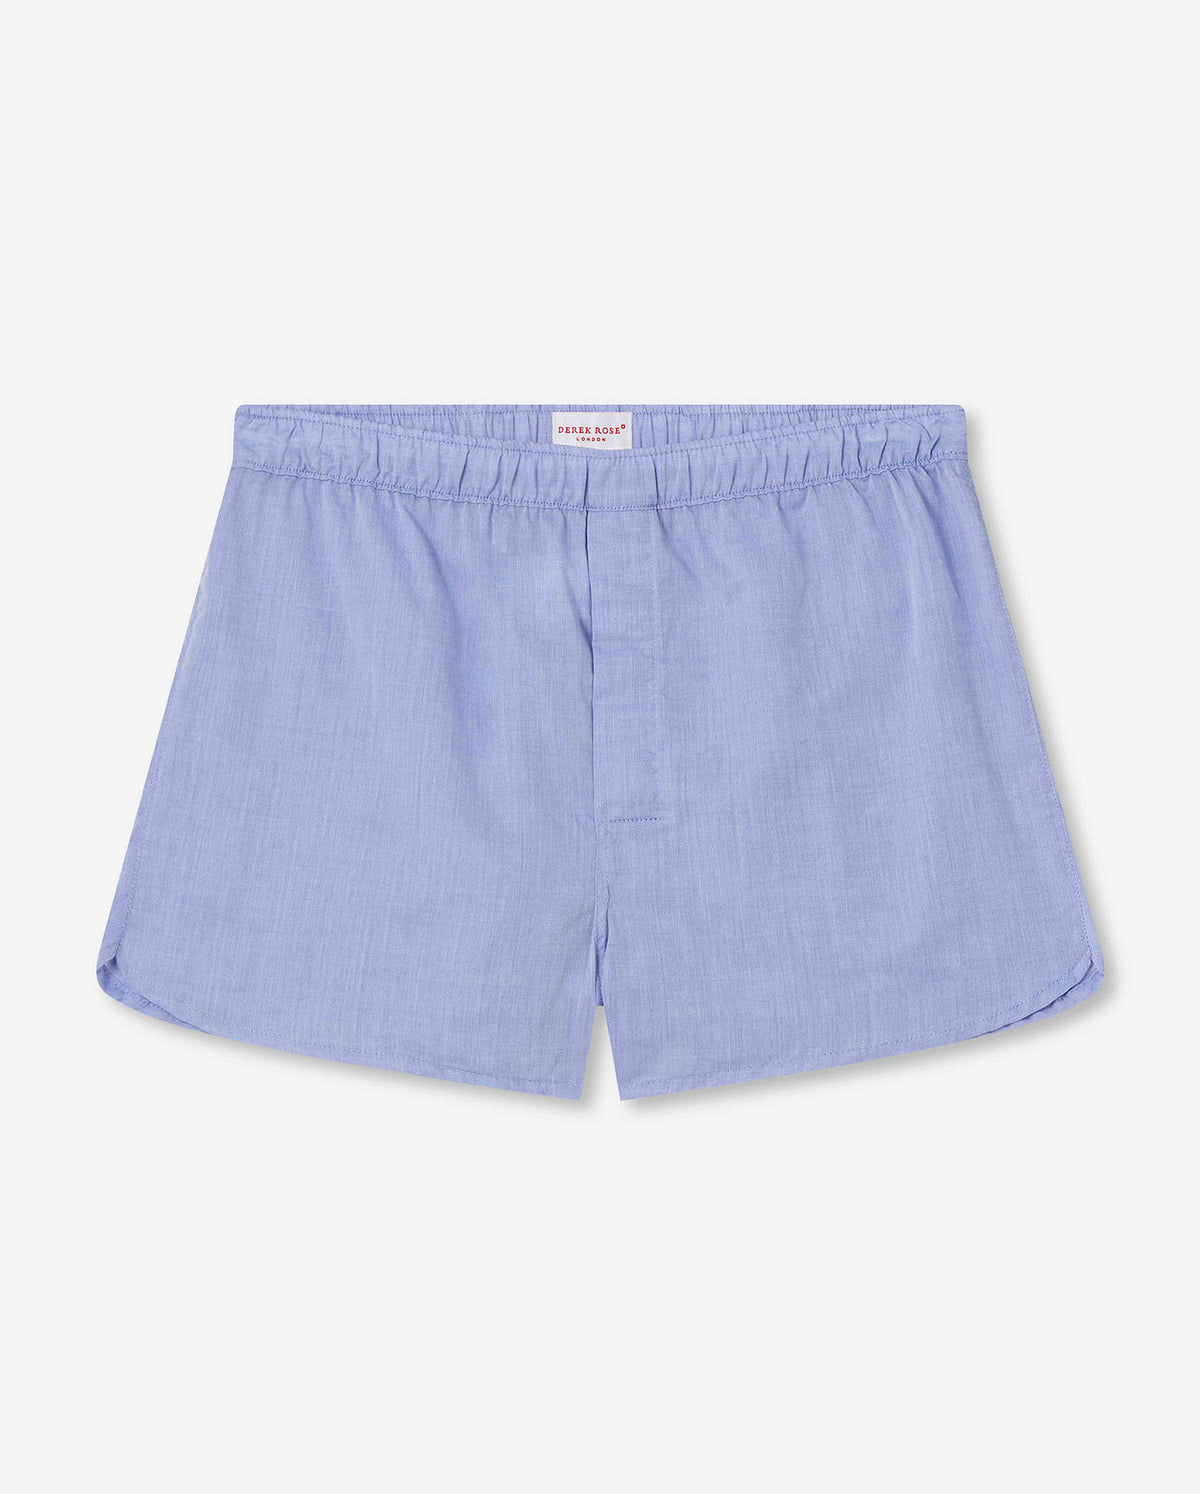 Amalfi Boxer Shorts - Blue